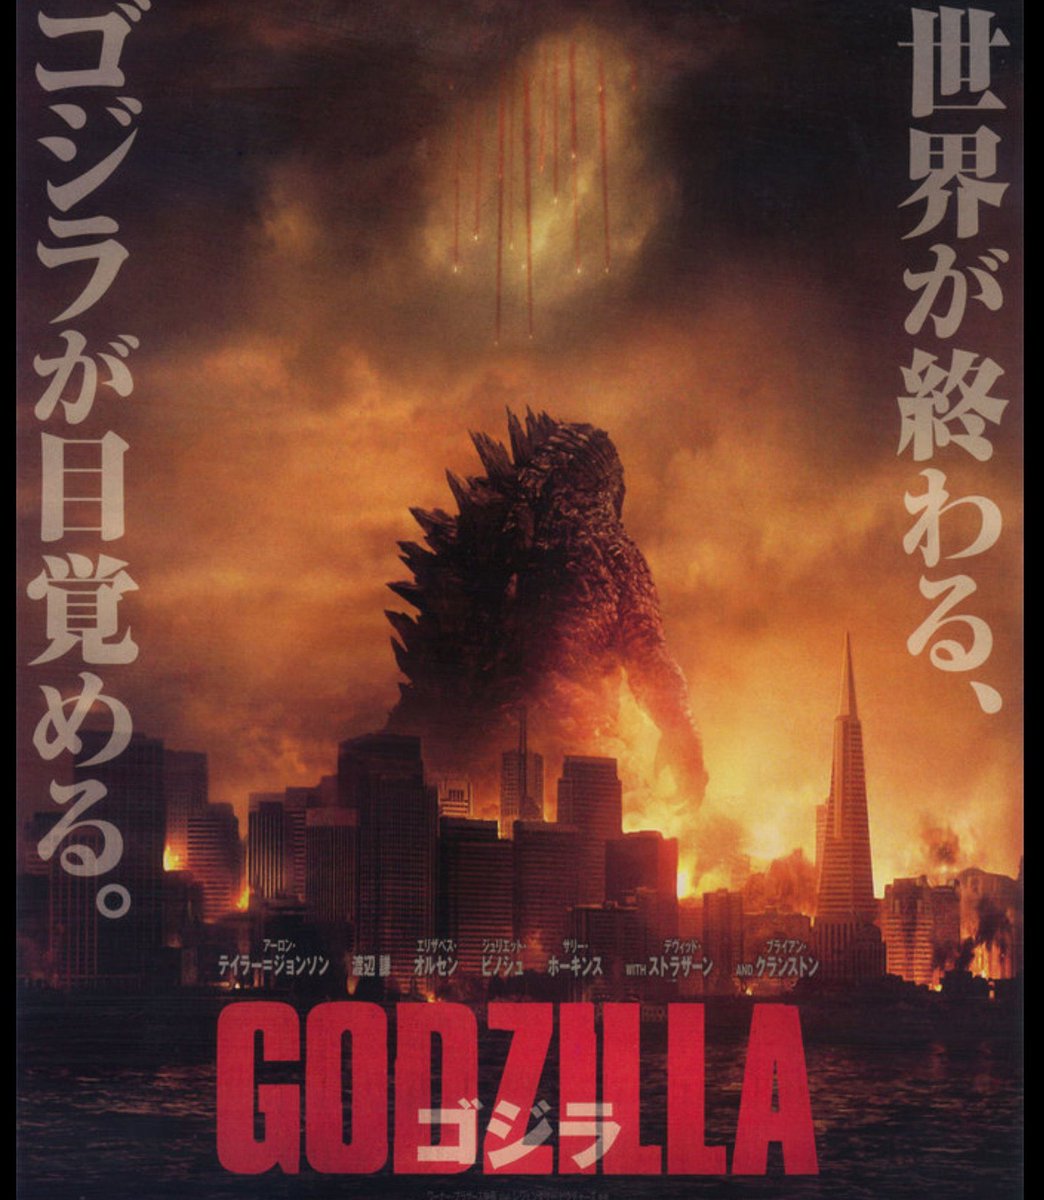 いよいよ今晩、土曜プレミアム(21:00~23:10)にて「GODZILLA 
ゴジラ」(2014年)が放送されます!
ということで再掲です

この映画を見たことないけど興味はあるなーという方に

『3コマで分かる「GODZILLA ゴジラ」』

※超雑です
#ゴジラ #Godzilla 